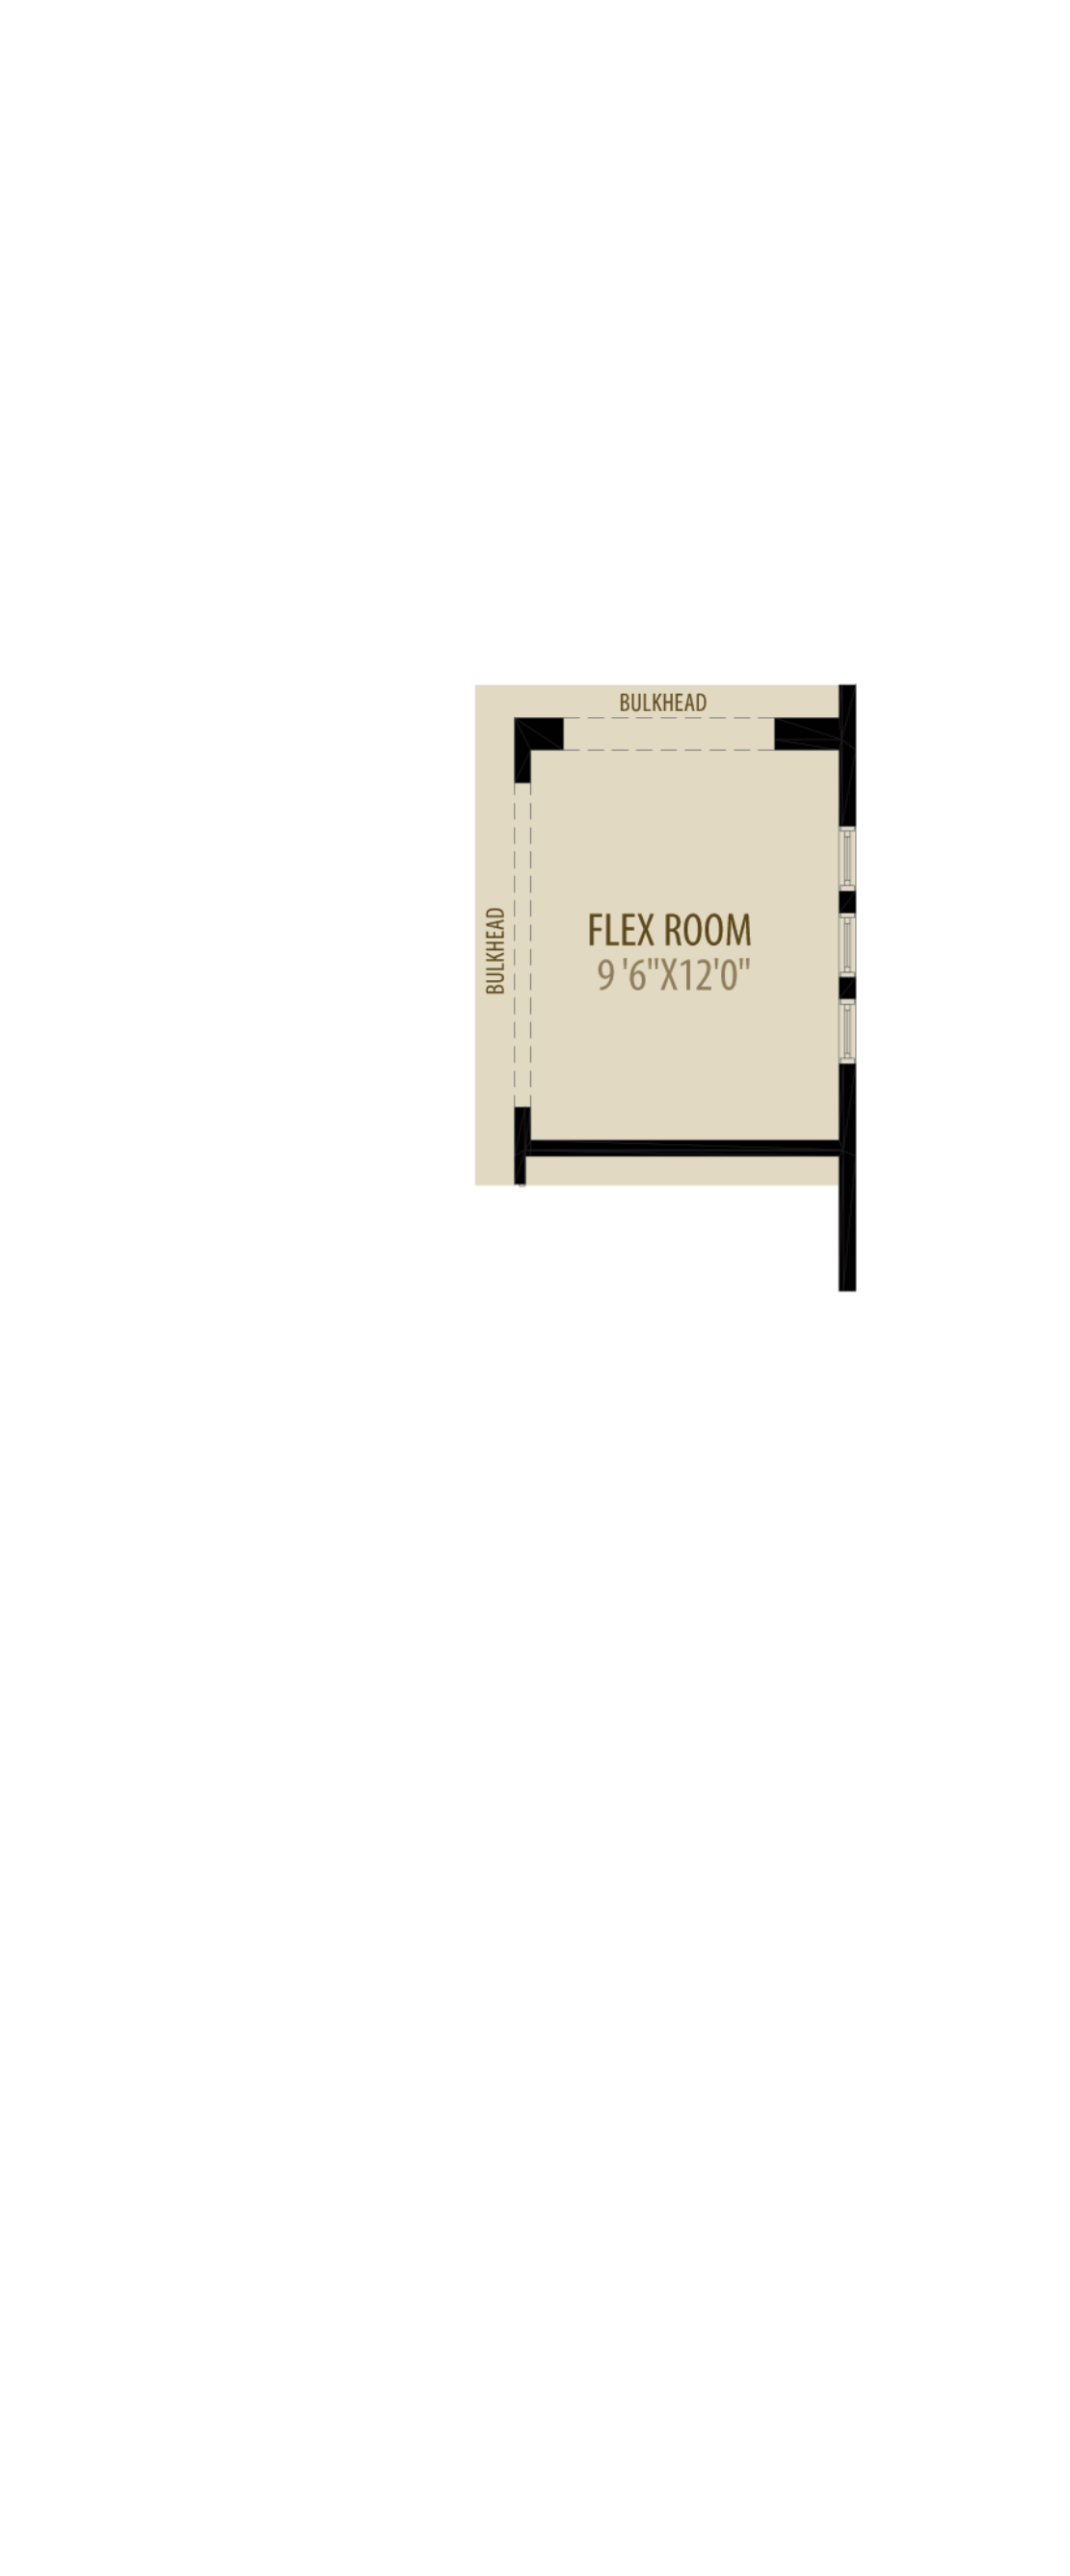 Flex Room Adds 120 sq ft